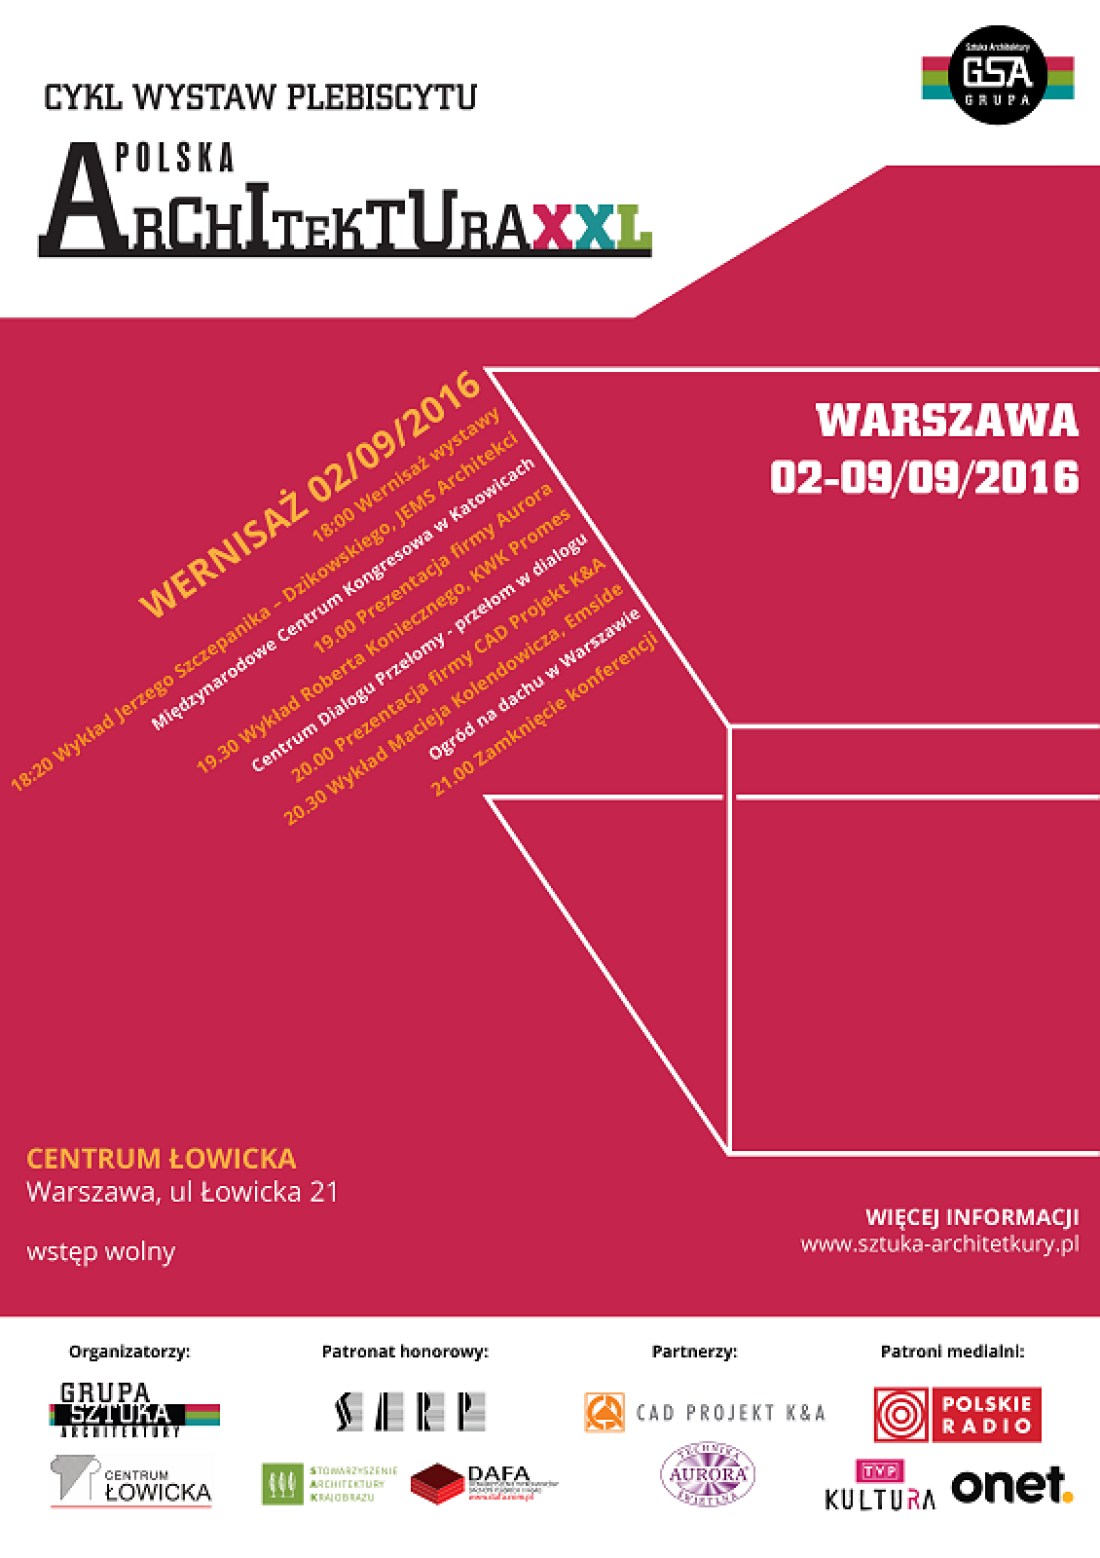 Wystawa Polska Architektura 2015 od piątku w Warszawie